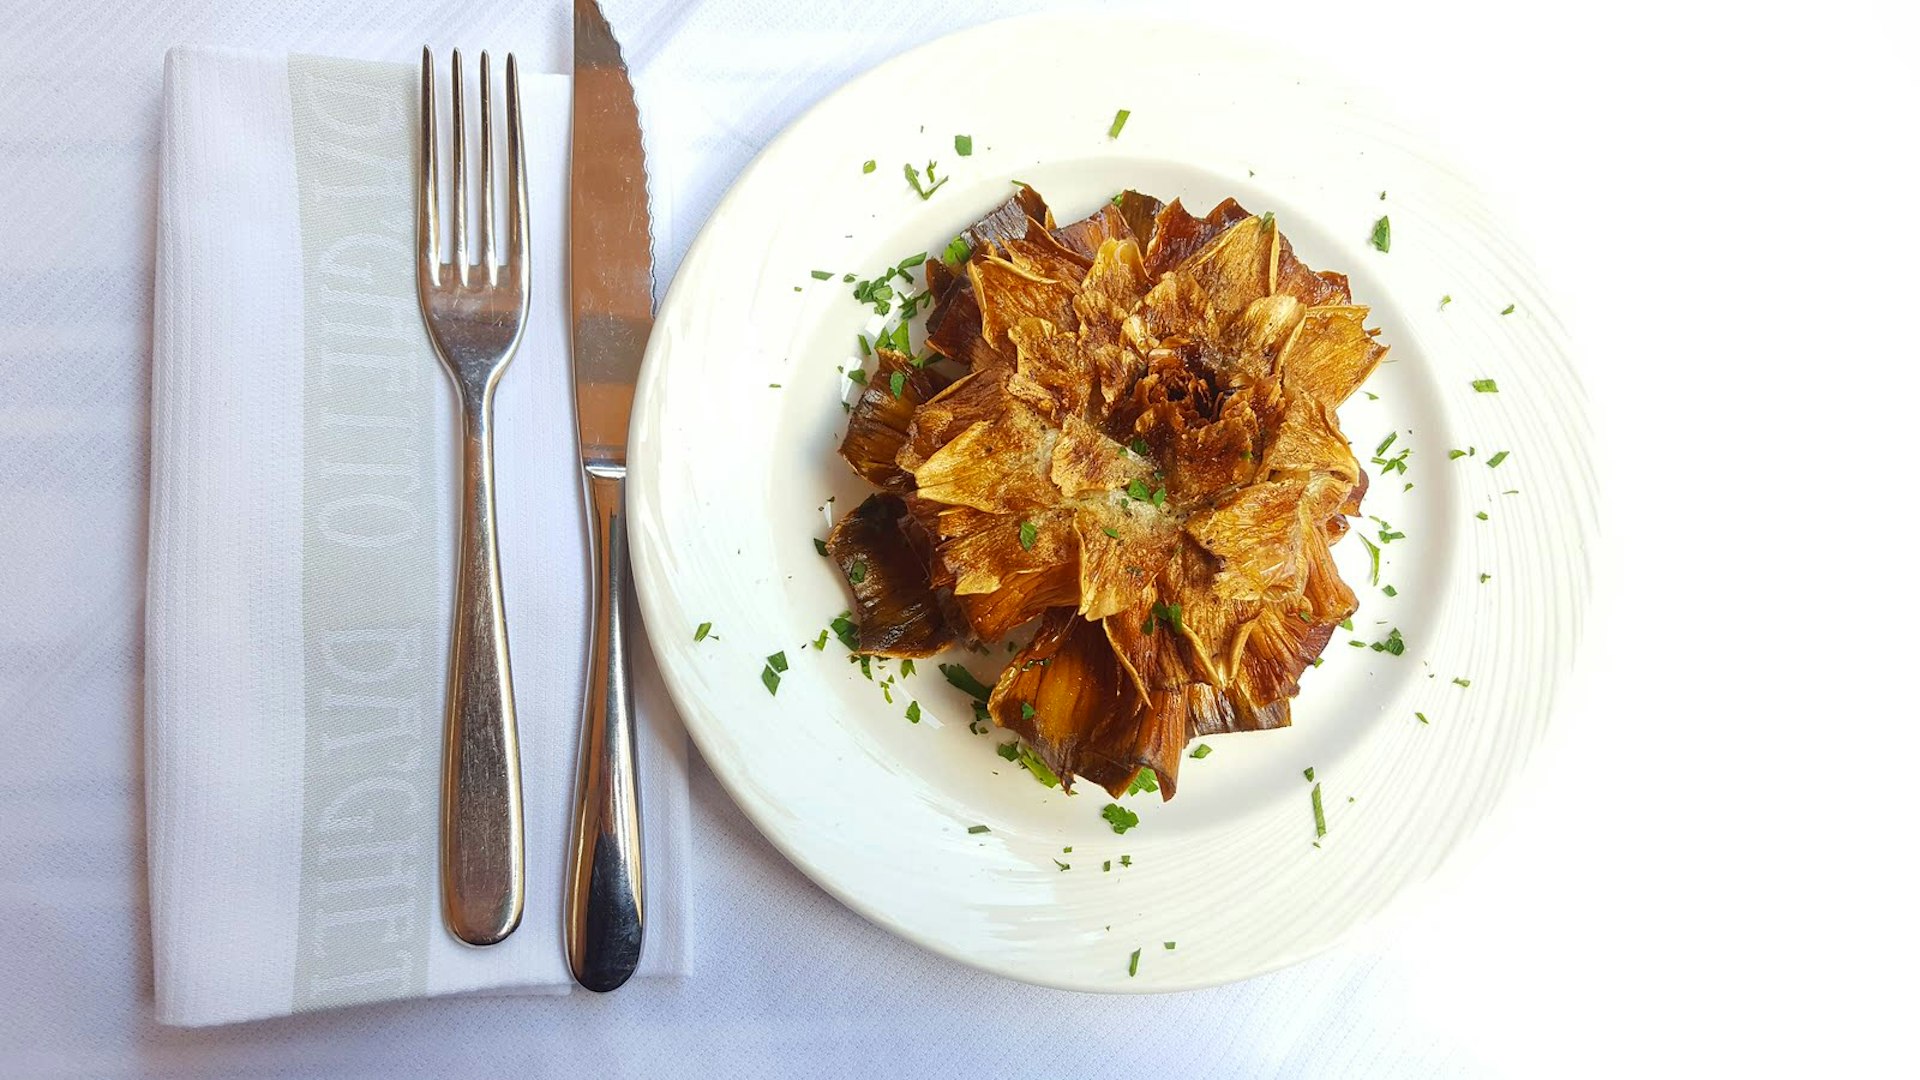 Ba'Ghetto's deep-fried artichoke is a work of art 